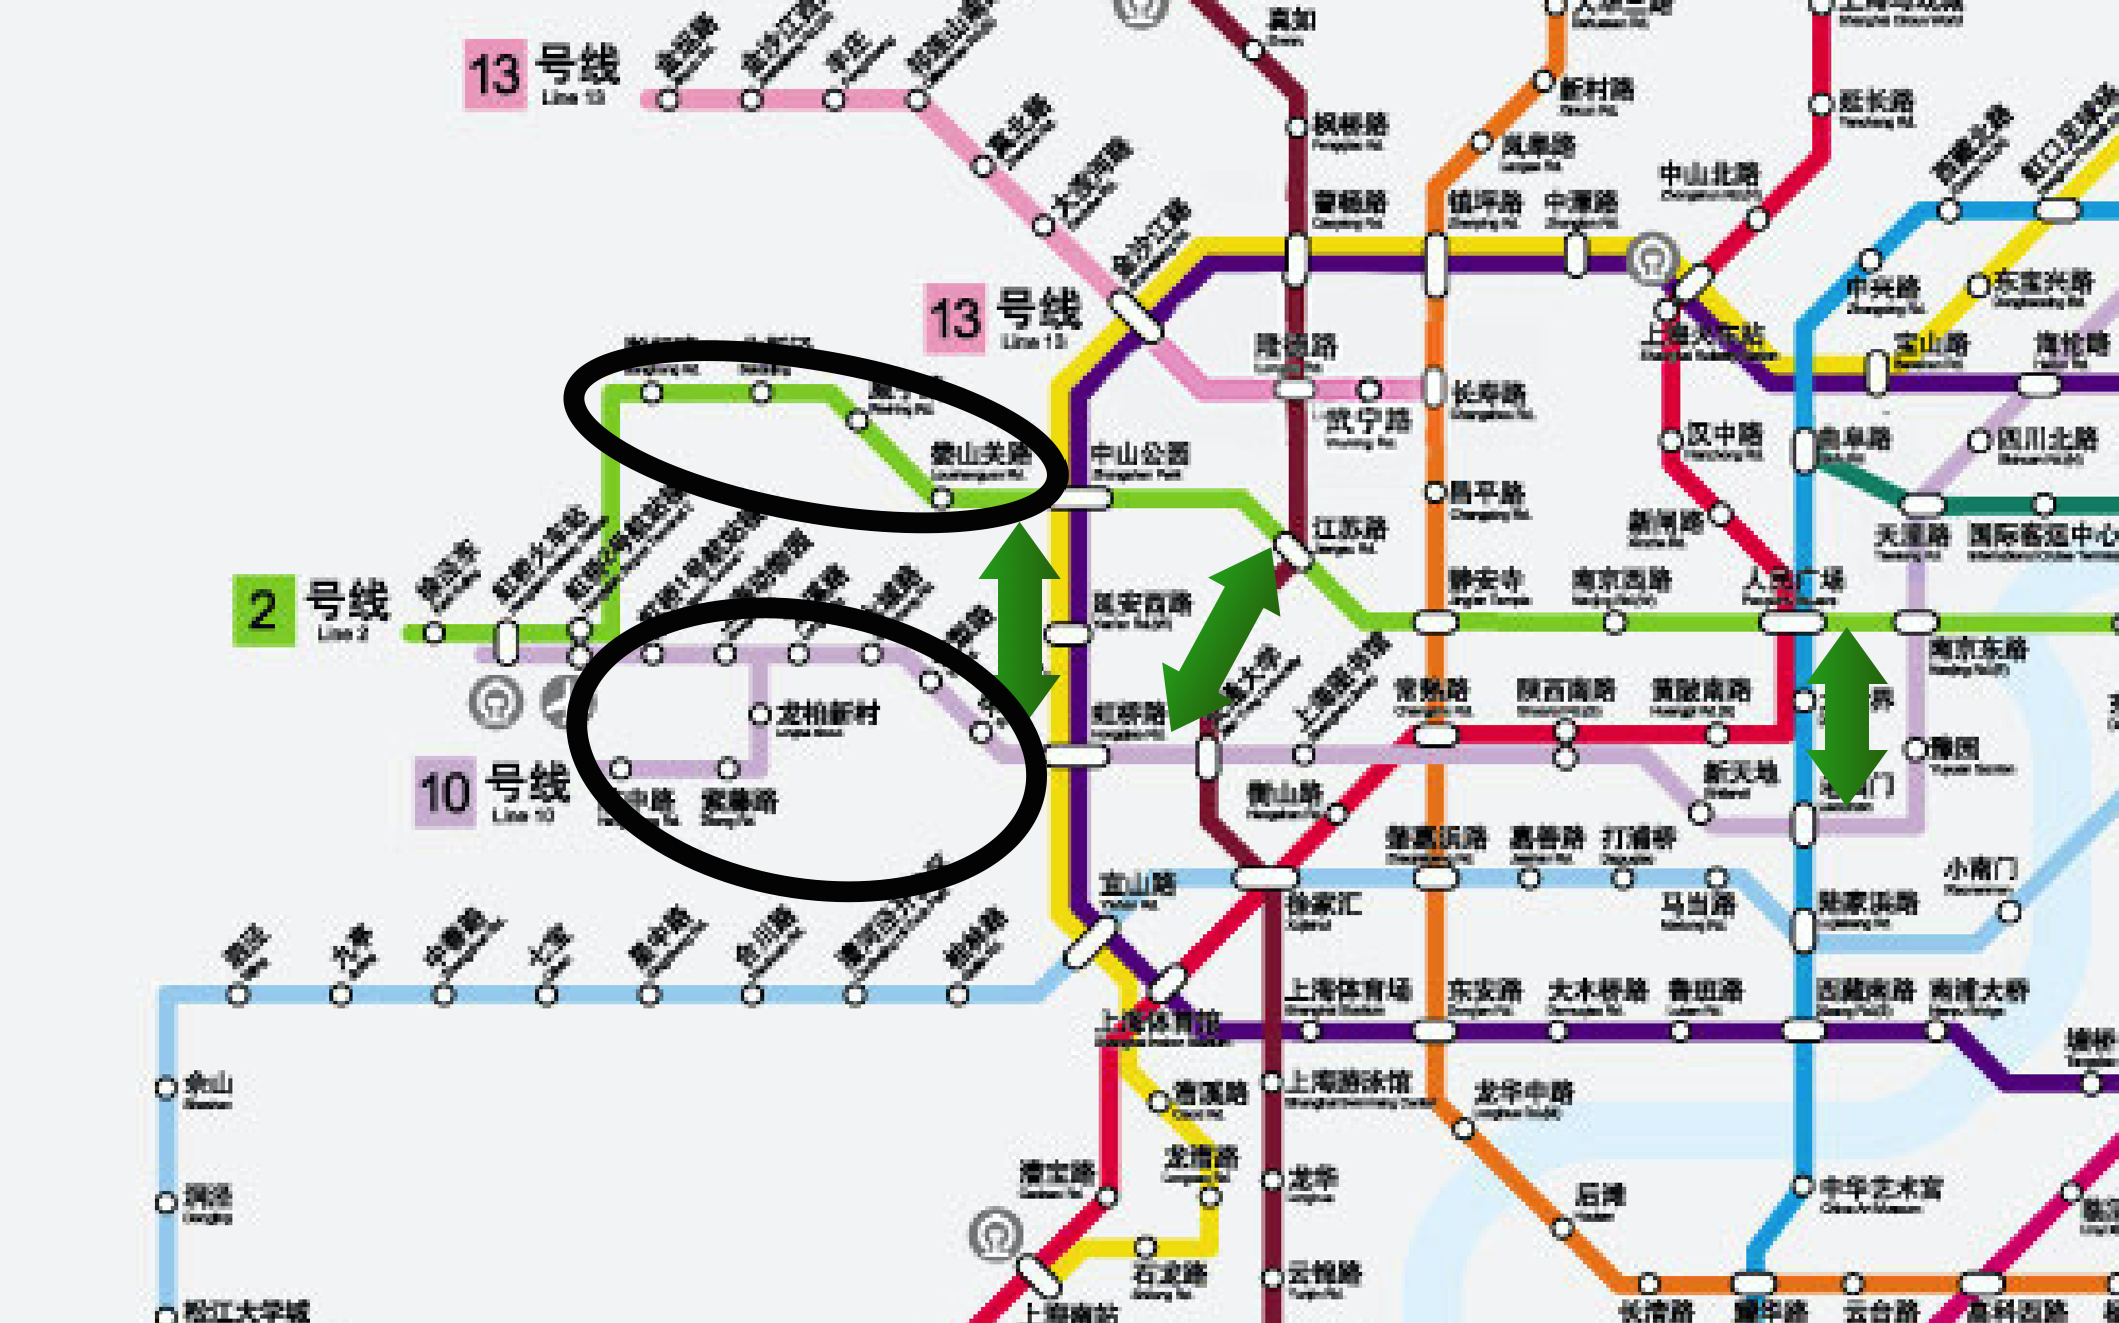 上海地铁线路图10号线图片